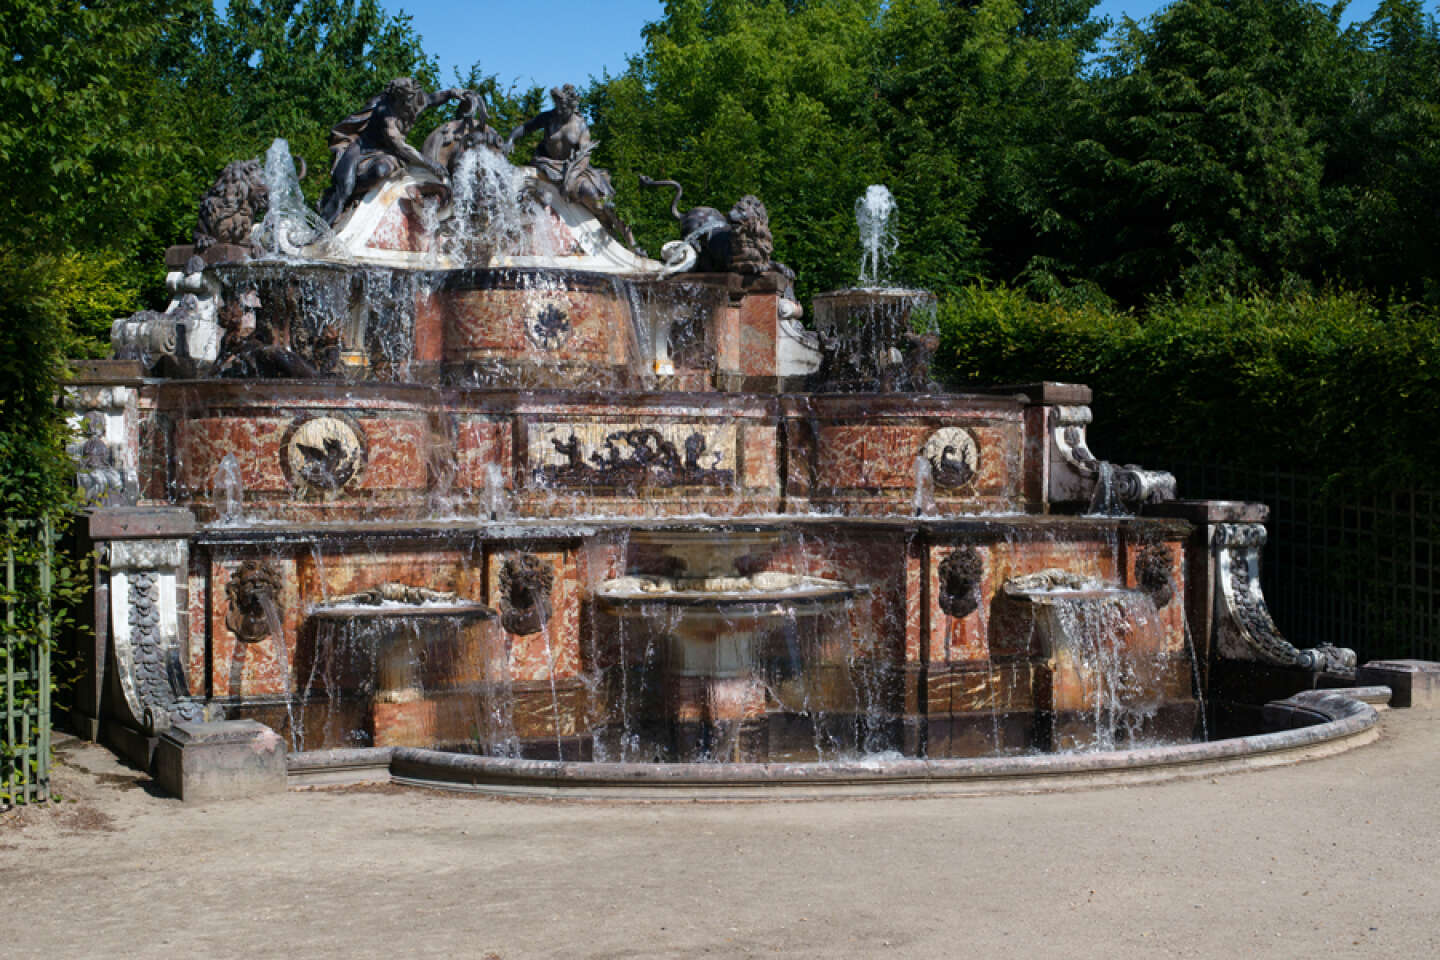 Le buffet d’eau de Trianon bientôt remis à neuf, la fontaine Médicis restaurée et un jardin d’artiste à la BnF Richelieu